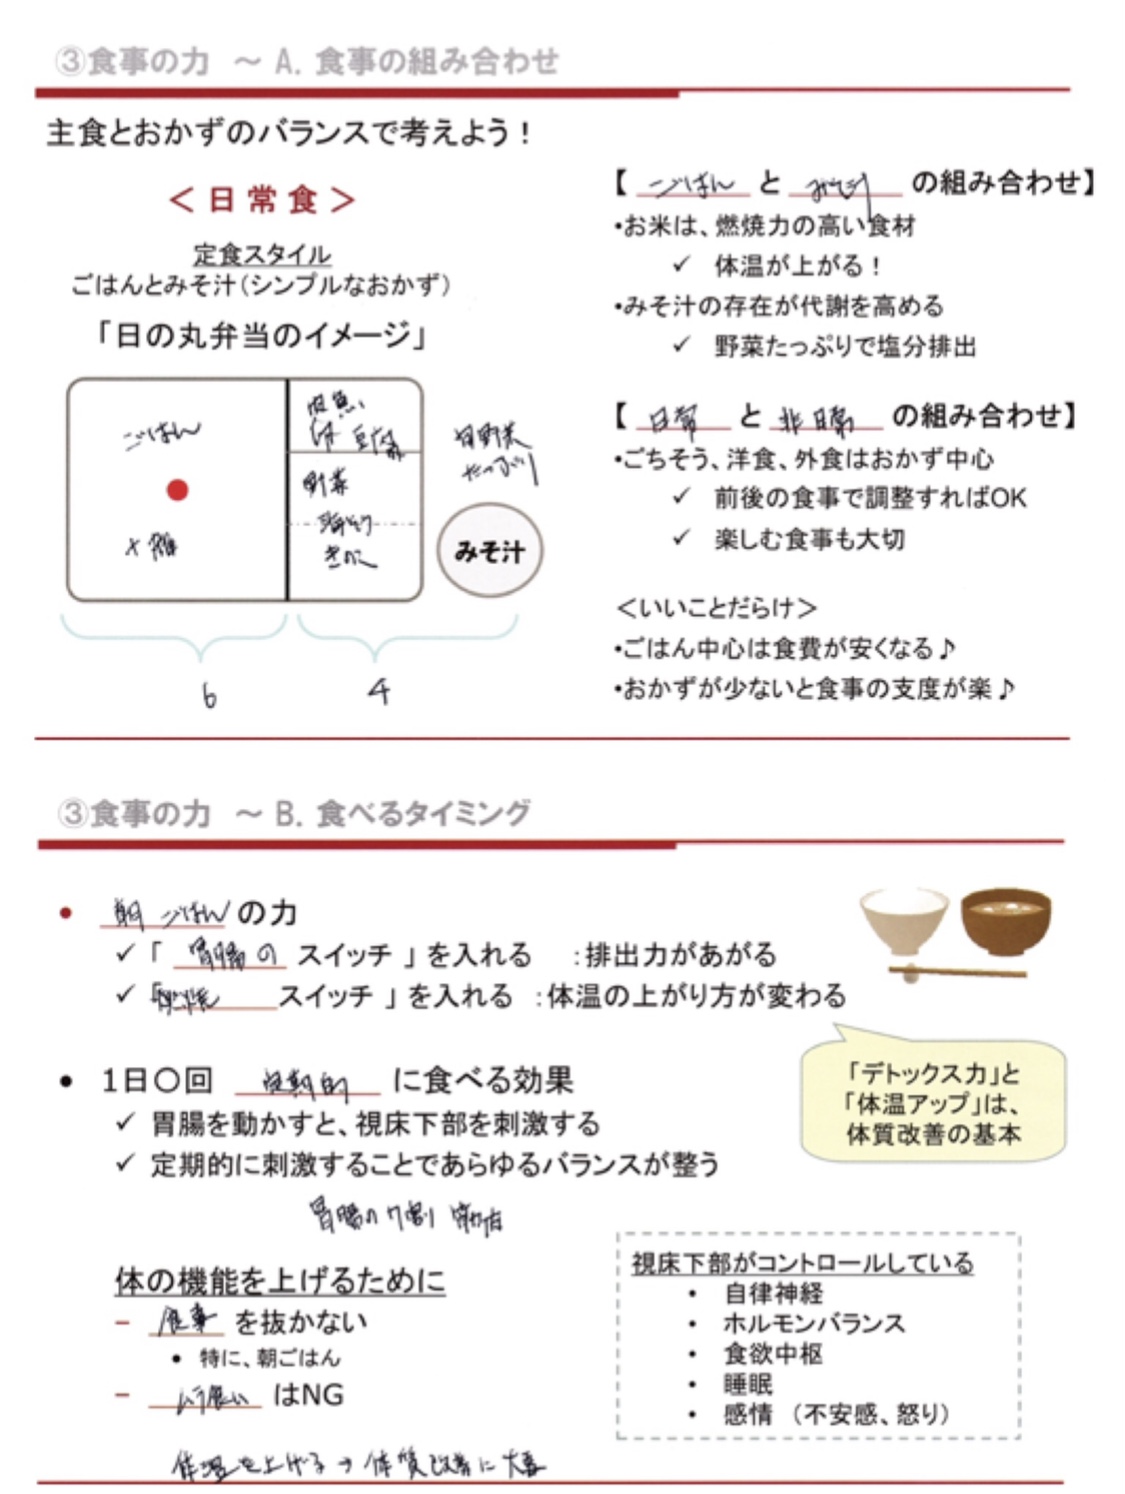 奈良 食育セミナー 栄養 ダイエット